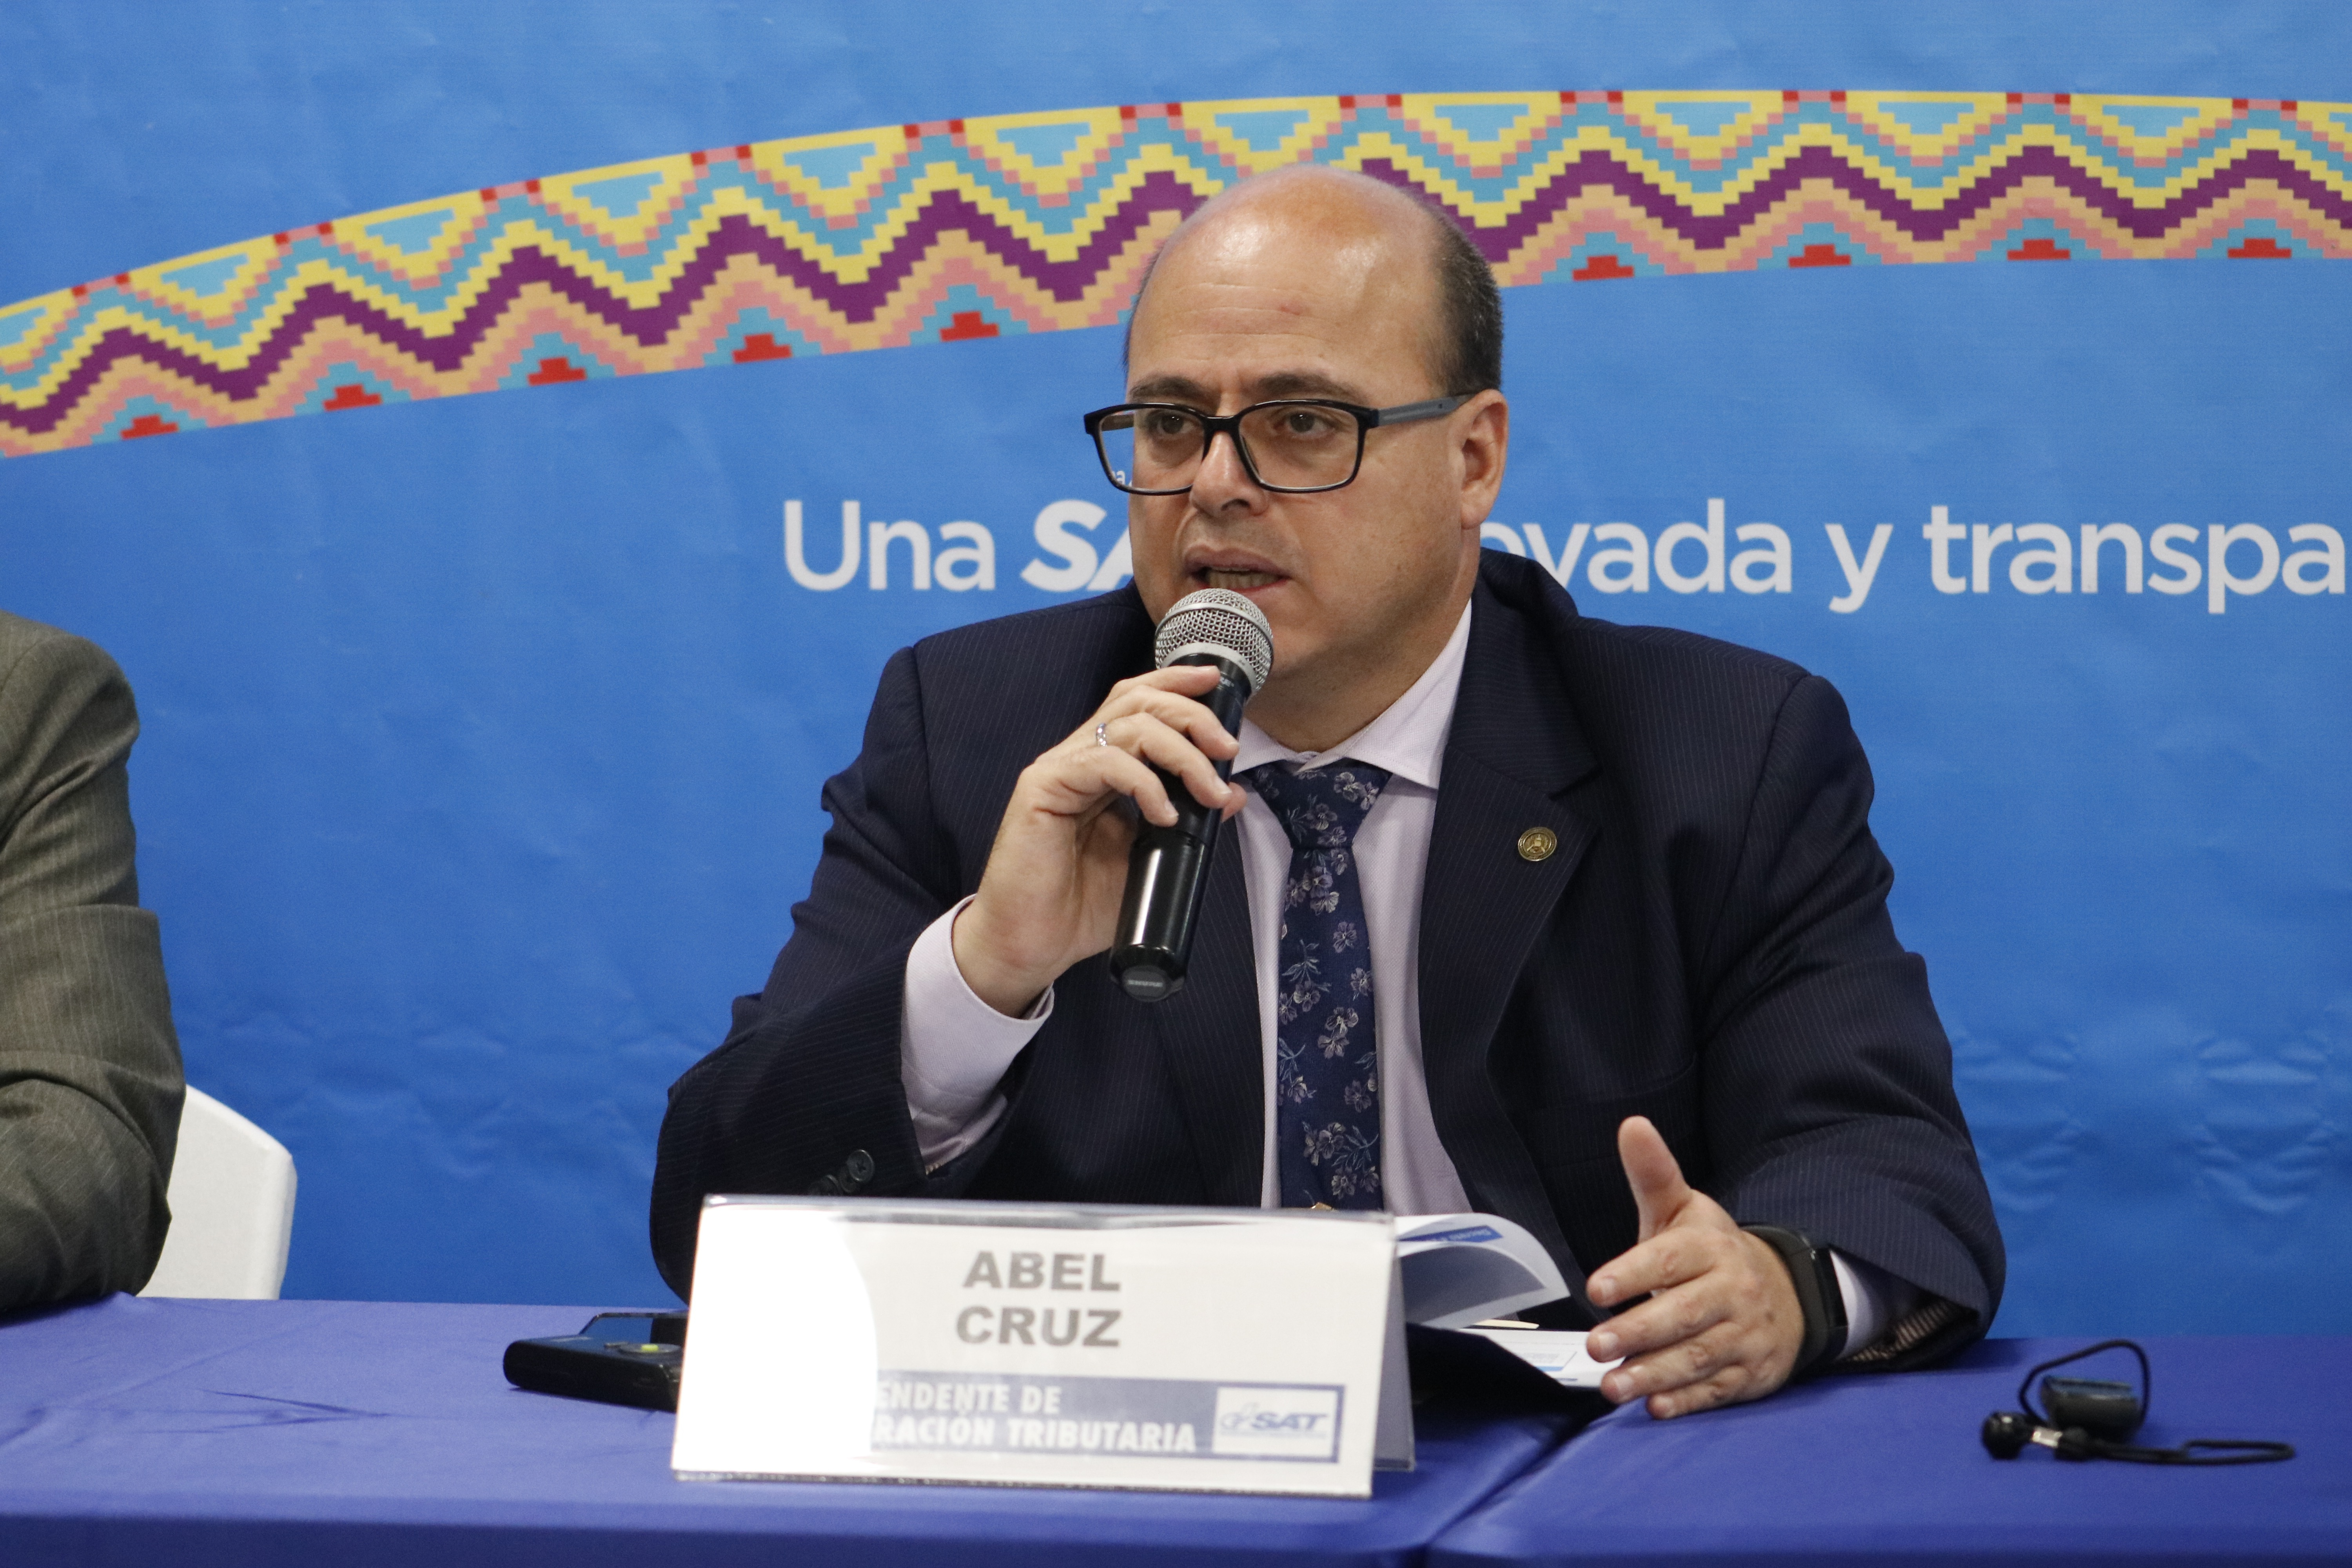 El jefe de la SAT, Abel Cruz Calderón, fue evaluado por el Directorio, luego del desempeño de su gestión. (Foto Prensa Libre: Hemeroteca)